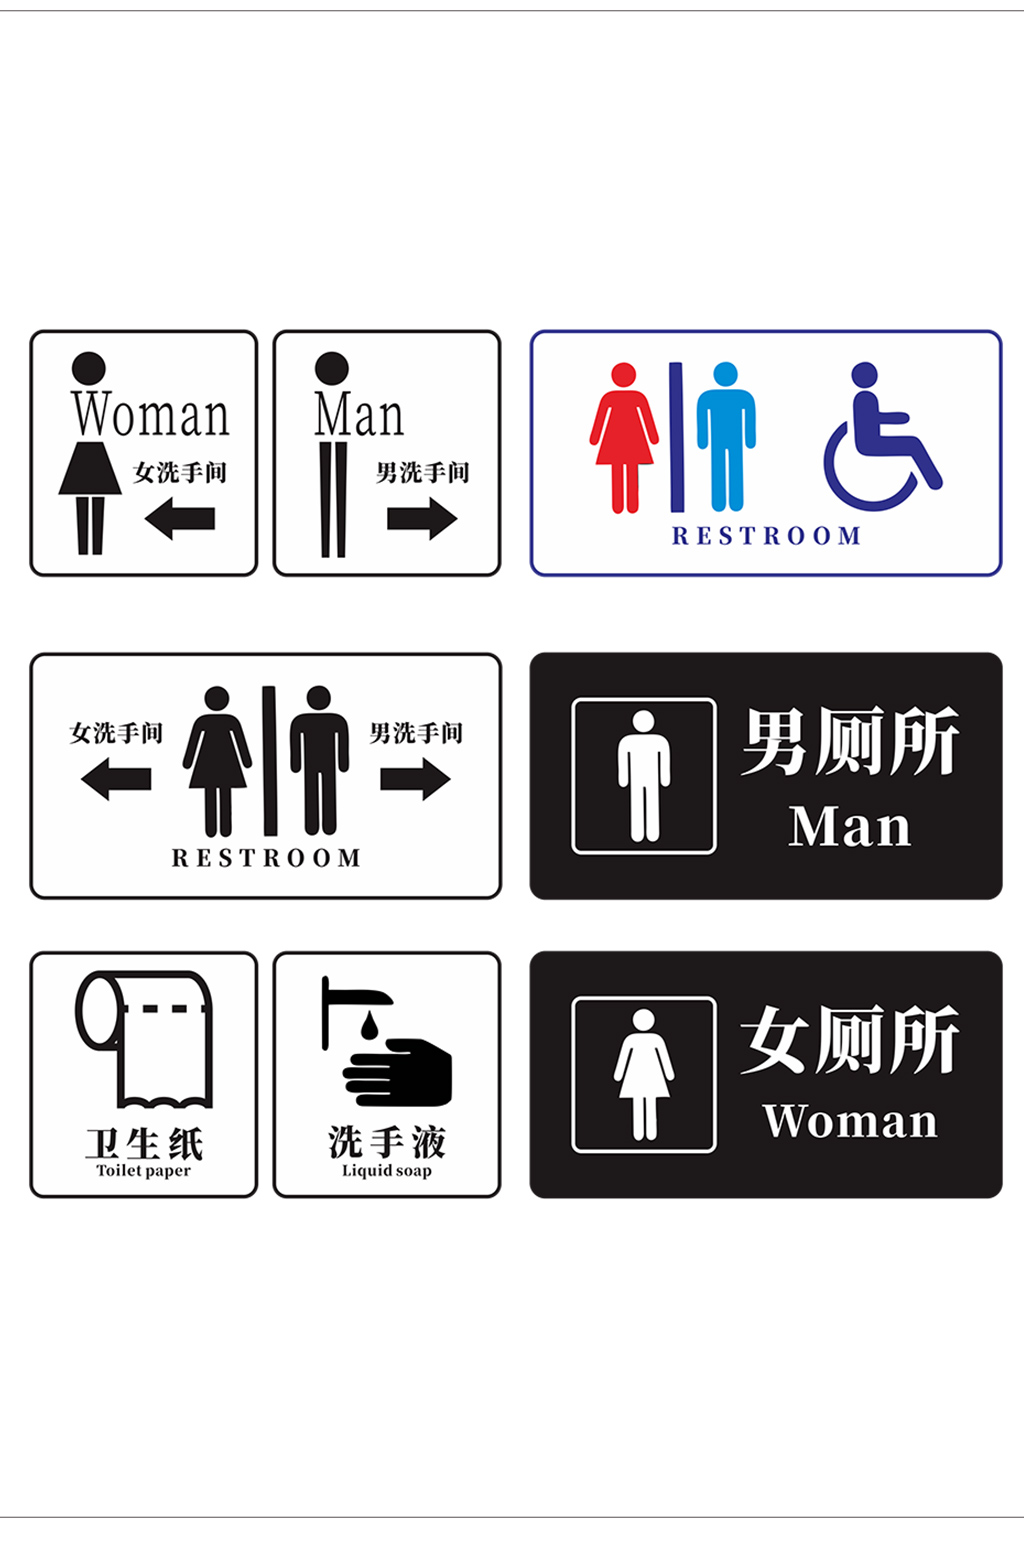 立即下载卫生间标识图形设计立即下载公共厕所卫生间男女牌子立即下